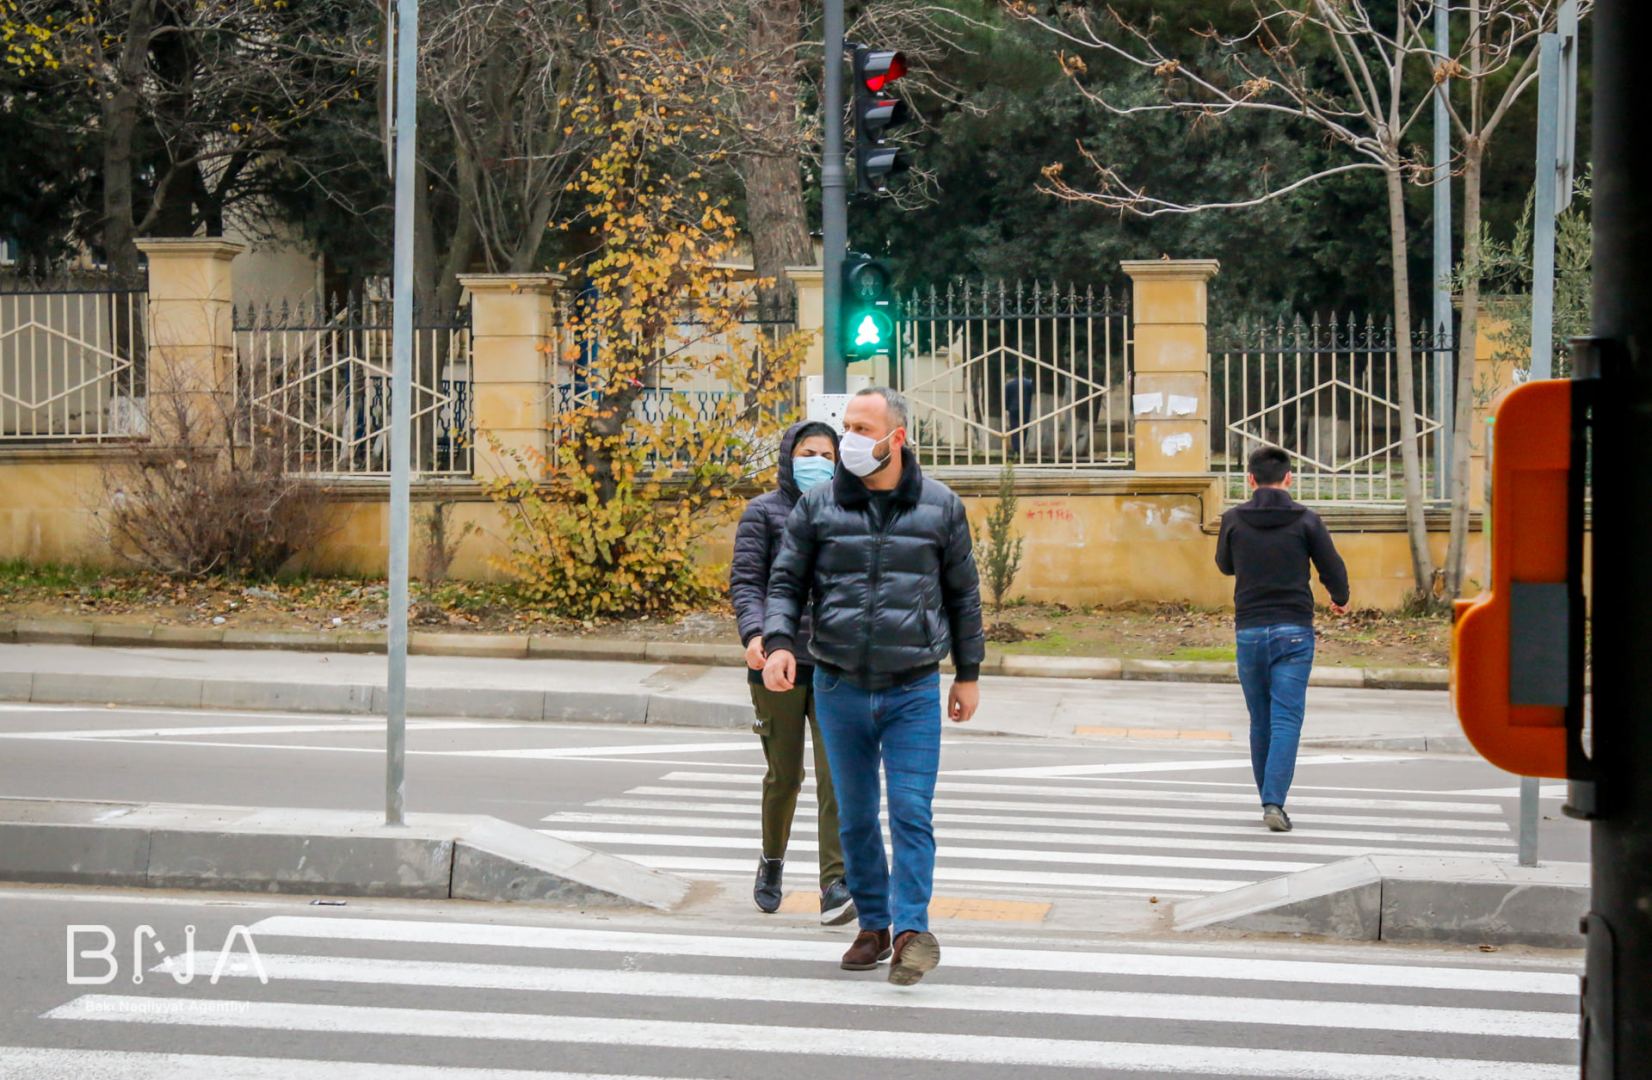 На одной из улиц Баку установлен управляемый светофор (ФОТО)